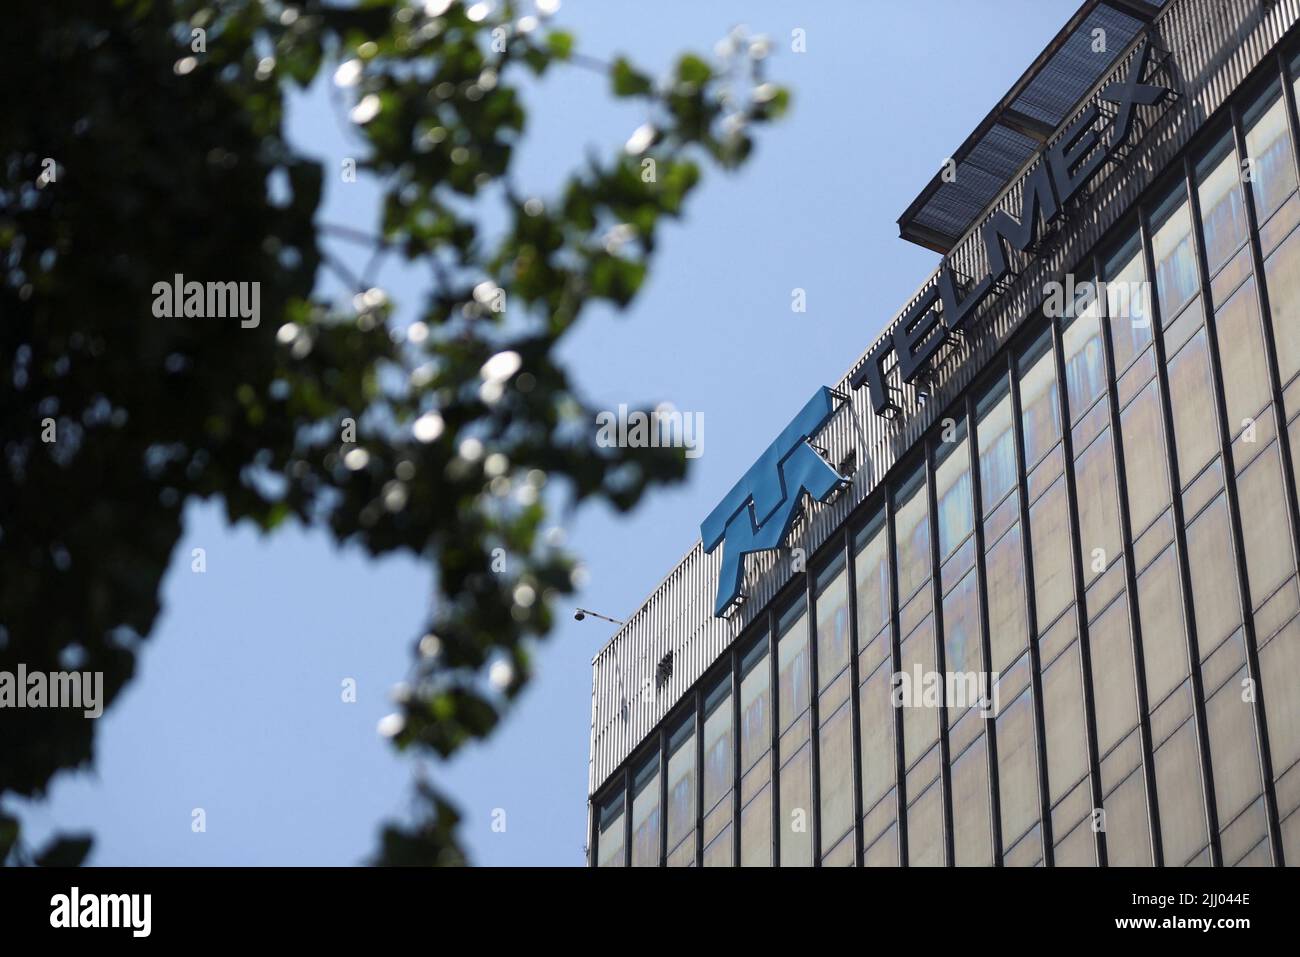 Una vista muestra las oficinas centrales de Telmex, cuando el sindicato de la empresa se declaró en huelga después de no llegar a un acuerdo con la empresa sobre un nuevo convenio colectivo laboral, en Ciudad de México, México, el 21 de julio de 2022. REUTERS/Edgard Garrido Foto de stock